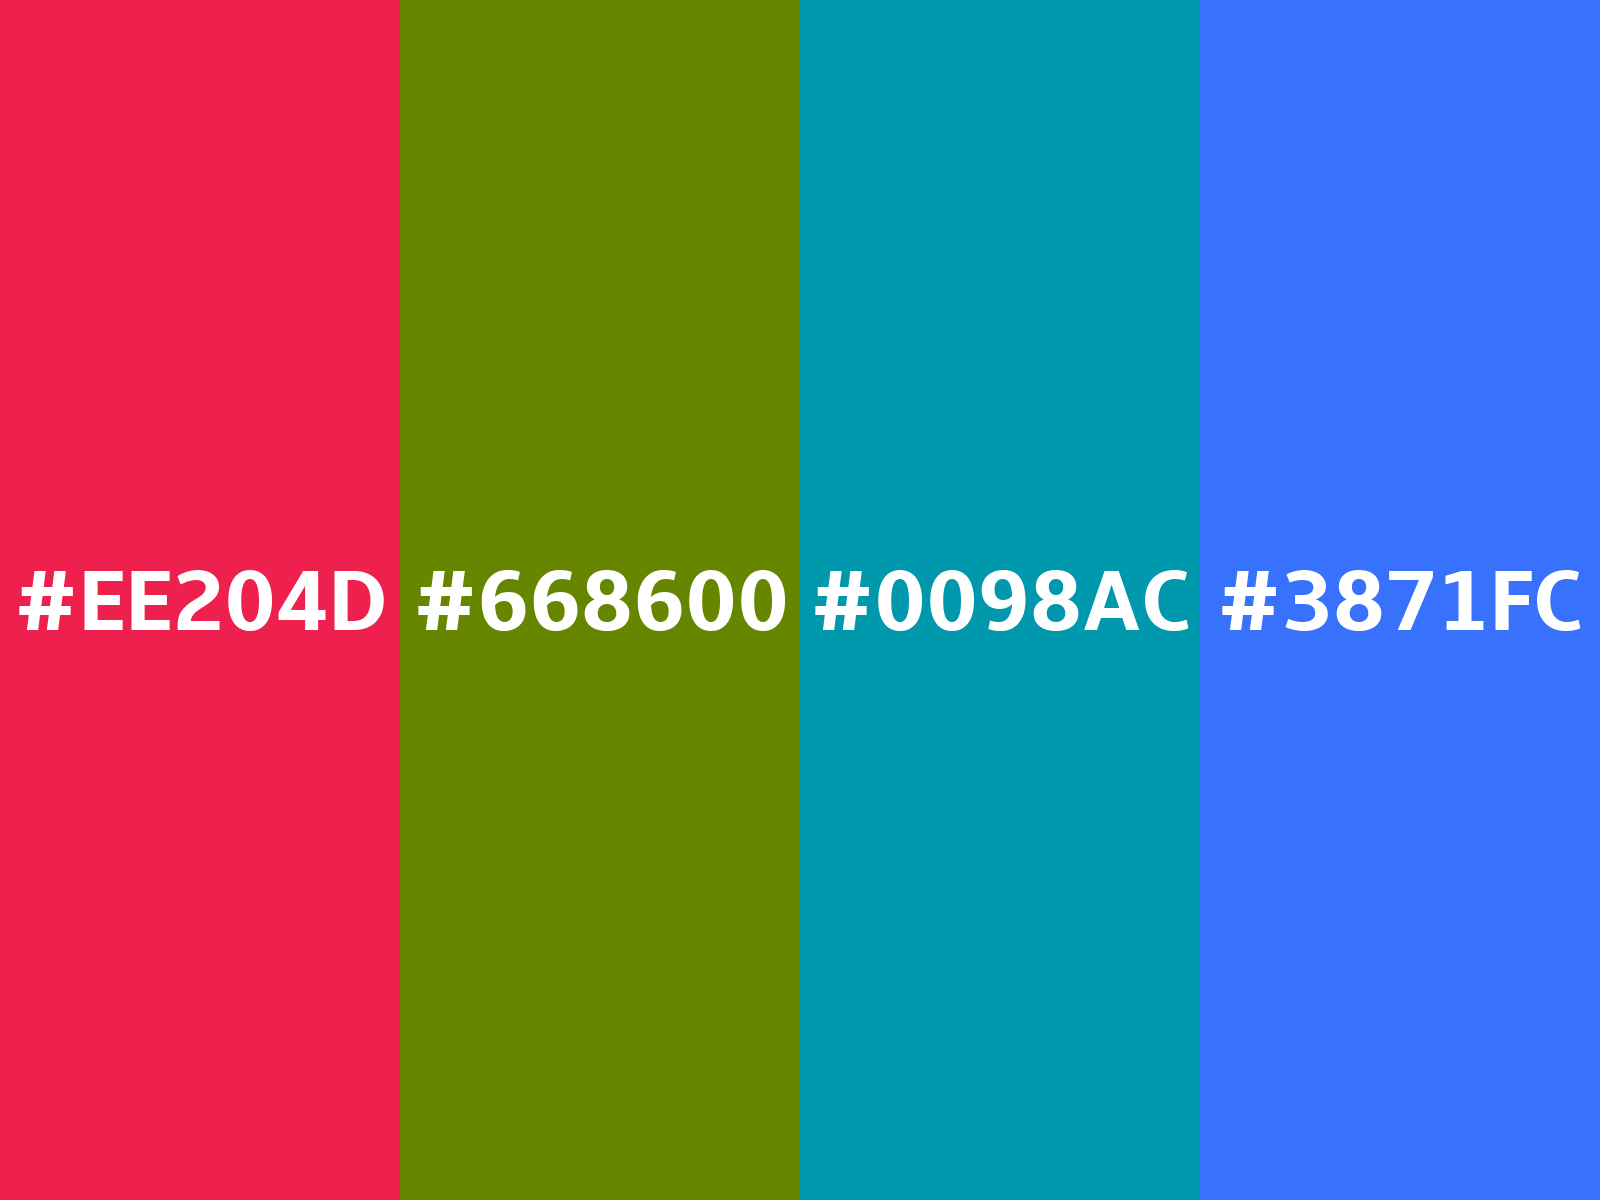 Crayola lime green - #b2e92e color code hexadecimal 